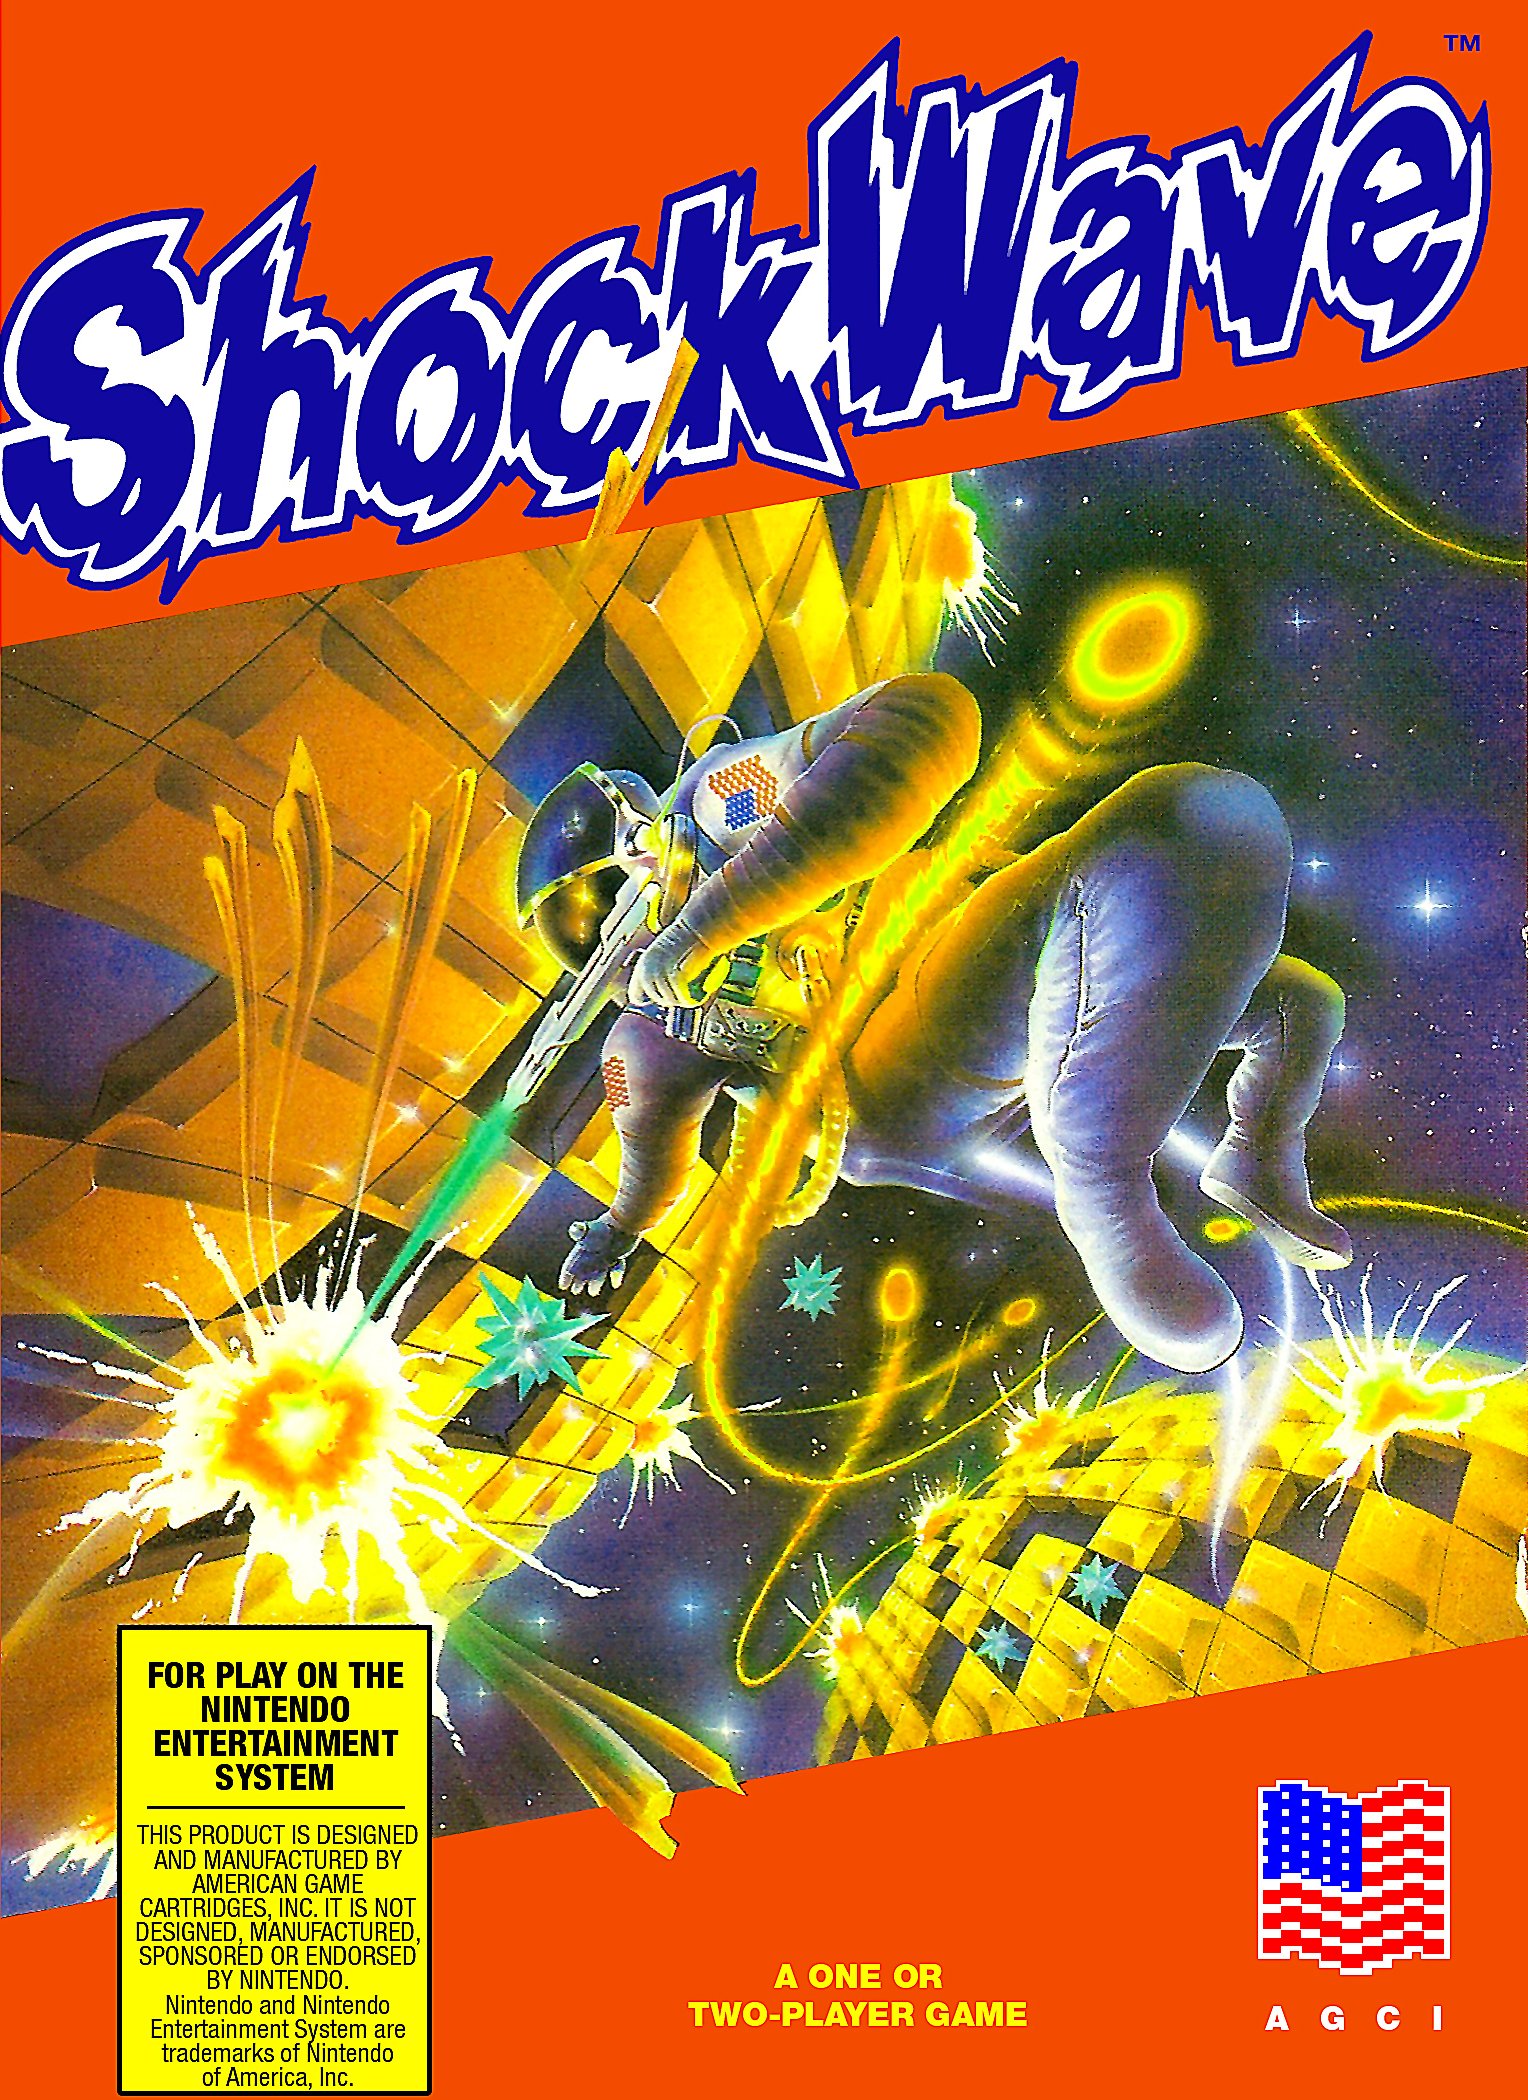 Image of Shockwave